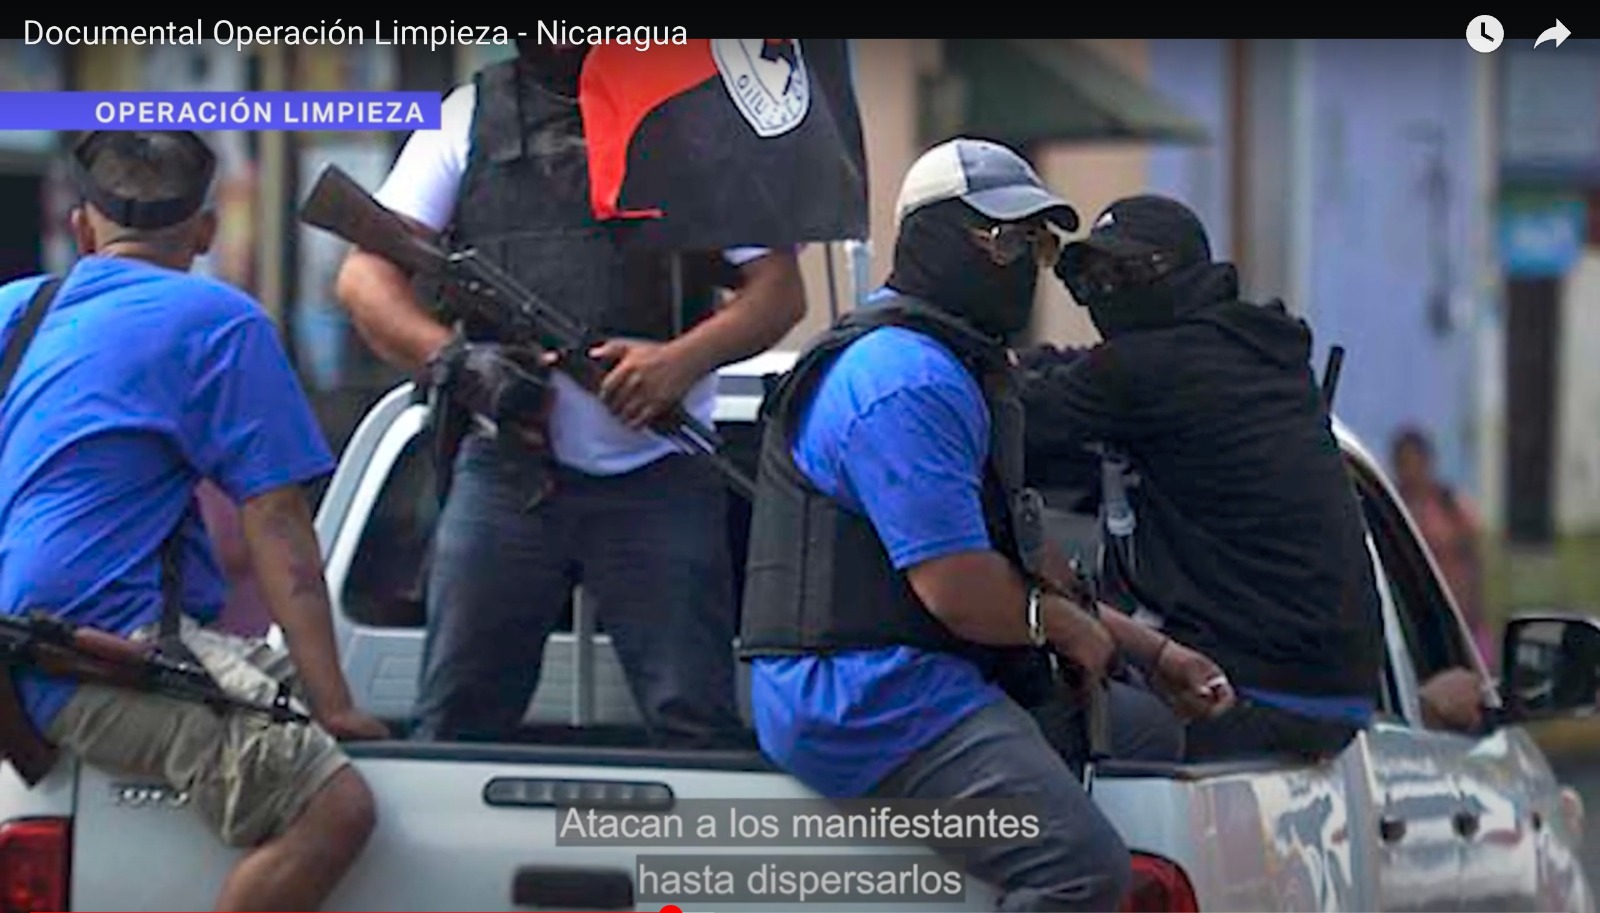 'Operación Limpieza', el documental que expone la estrategia de represión en Nicaragua